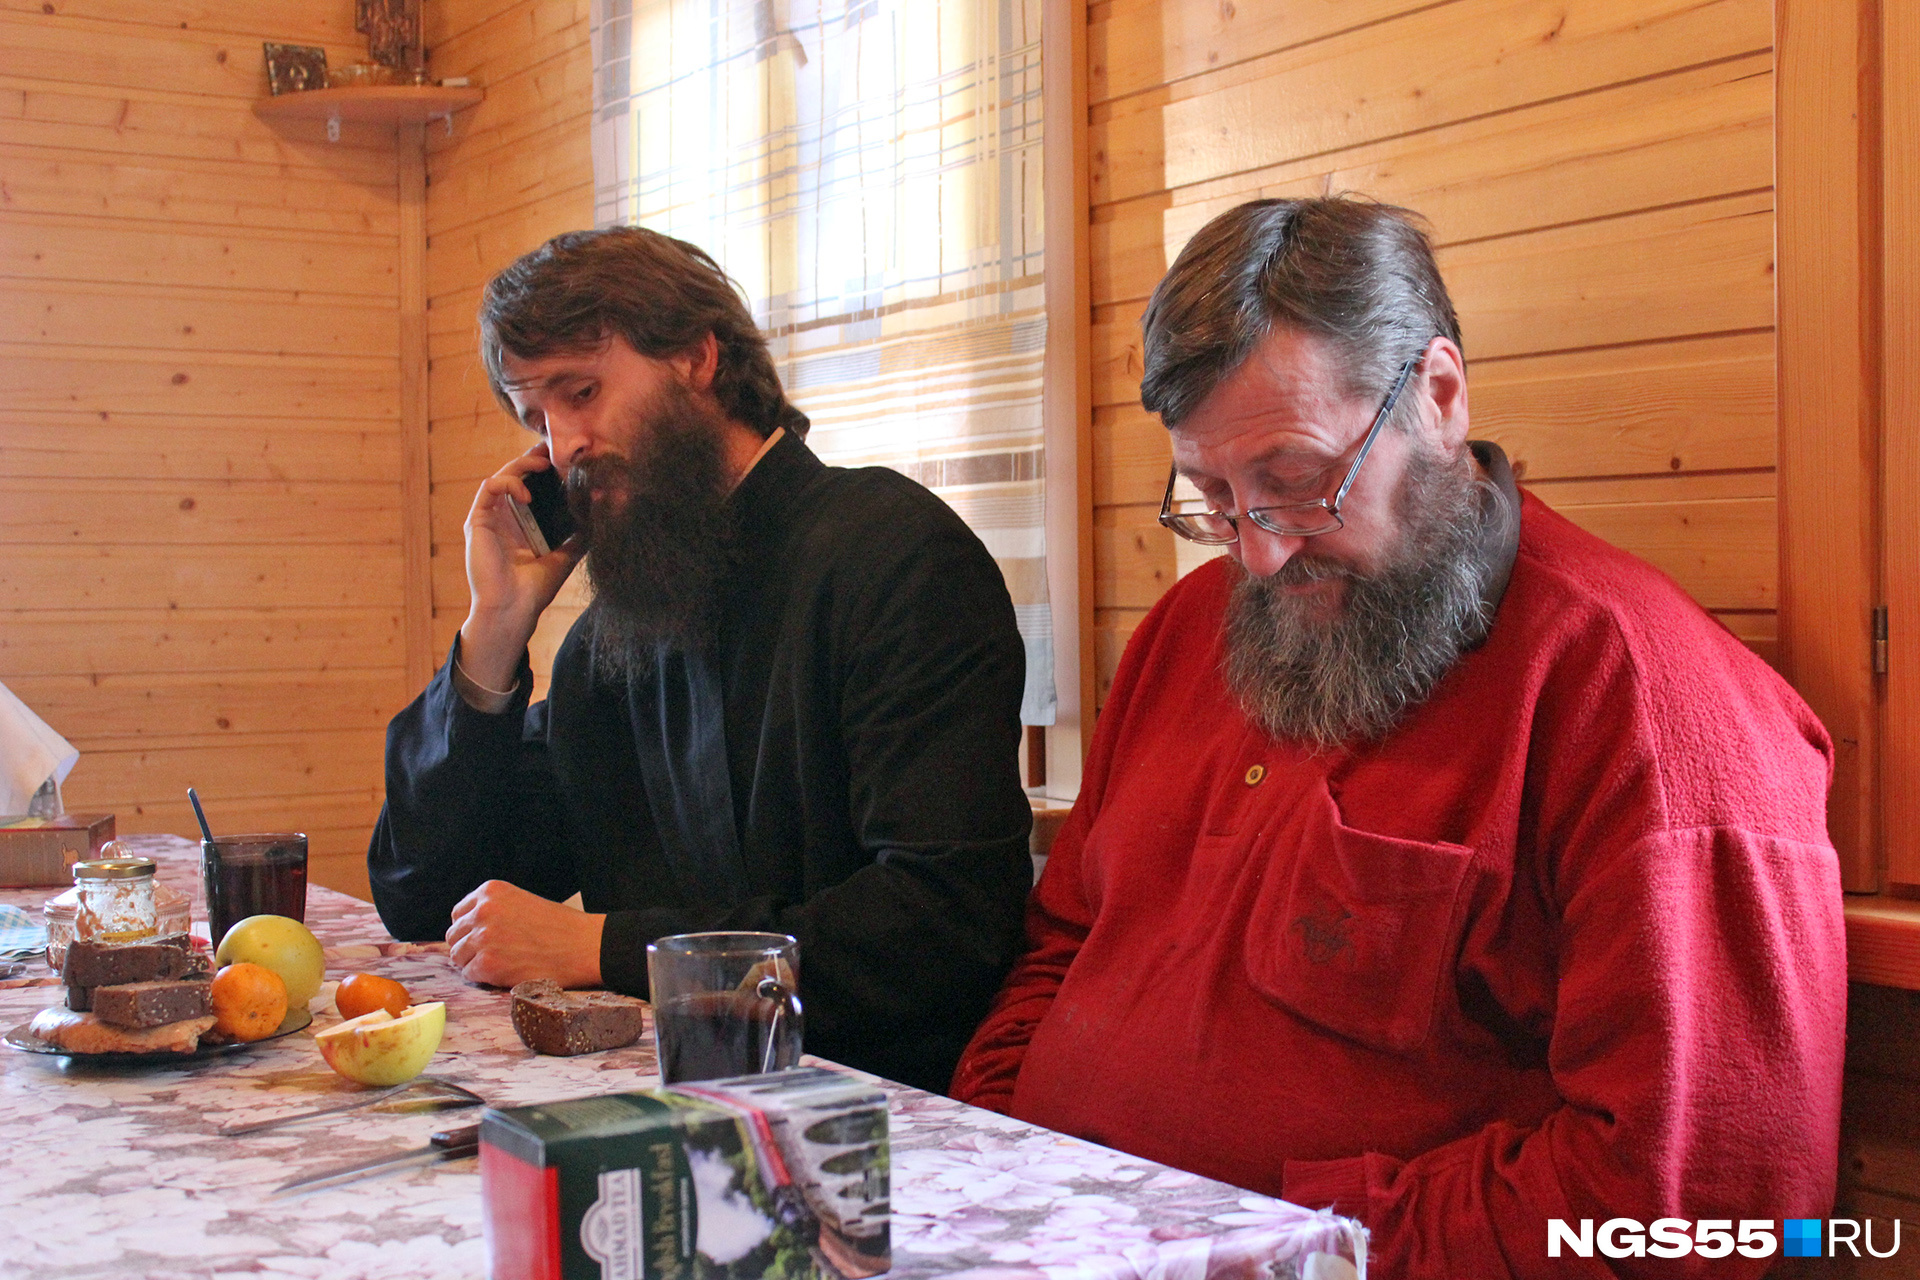 Фото не постановочное: пока отец Пётр отвечает на звонок, Иван проверяет сообщения на телефоне